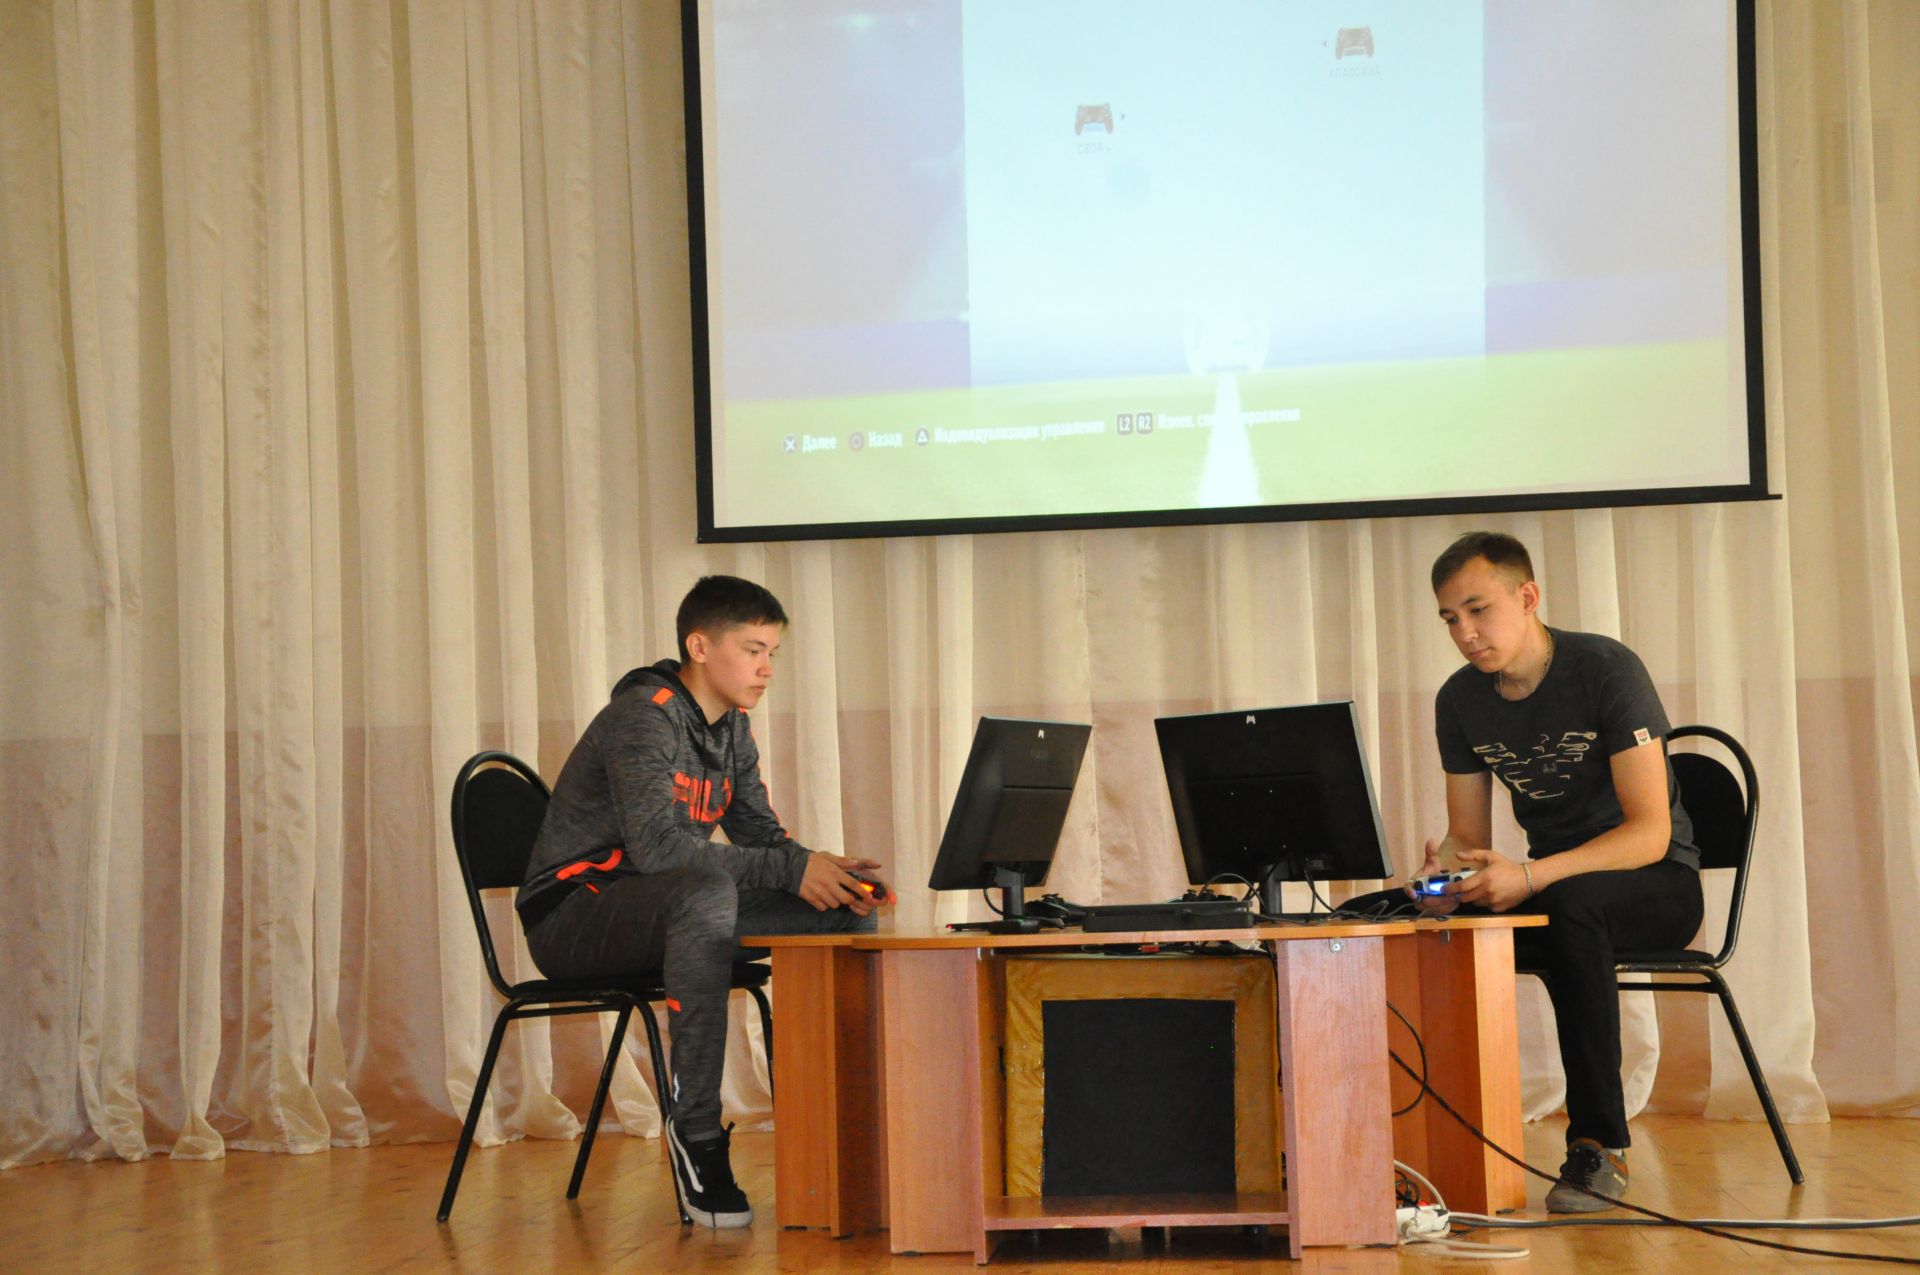 20 мая прошел Межрайонный турнир по киберфутболу среди молодежи, приуроченный к Чемпионату мира по футболу 2018